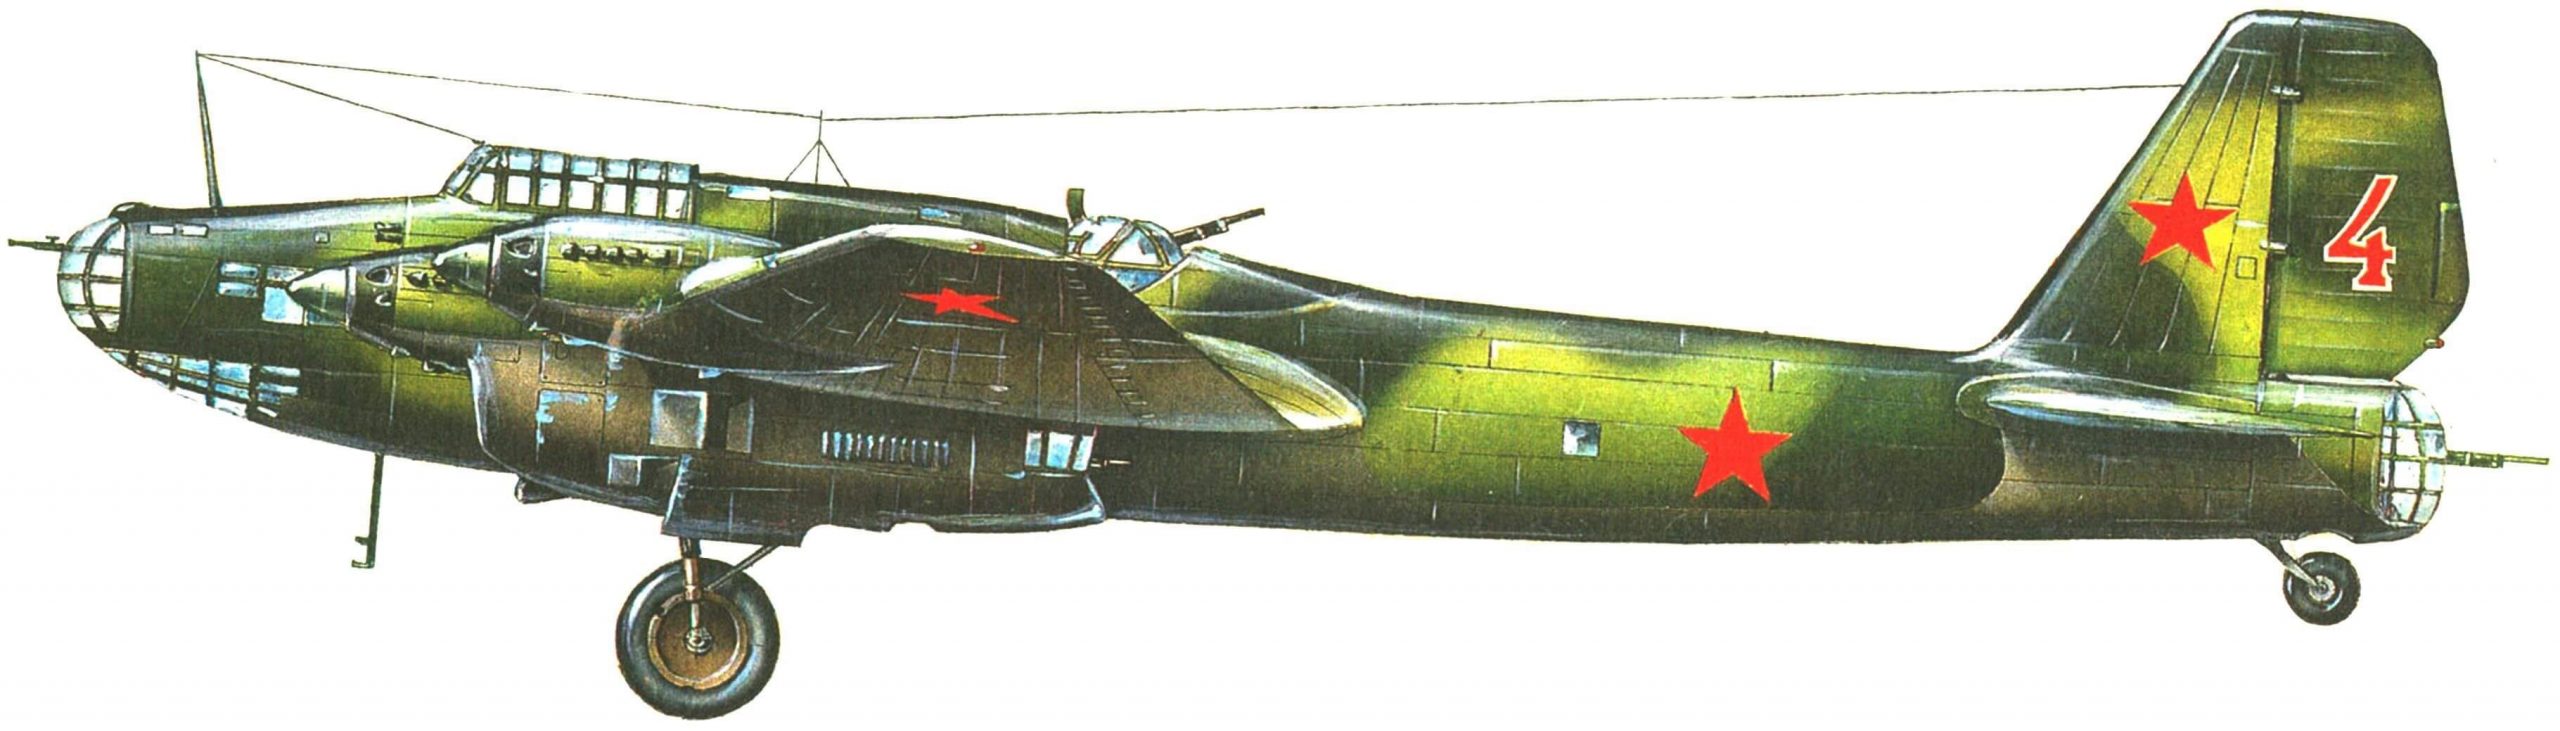 Пе-8 из состава 746-го полка авиации дальнего действия, 1942 г.